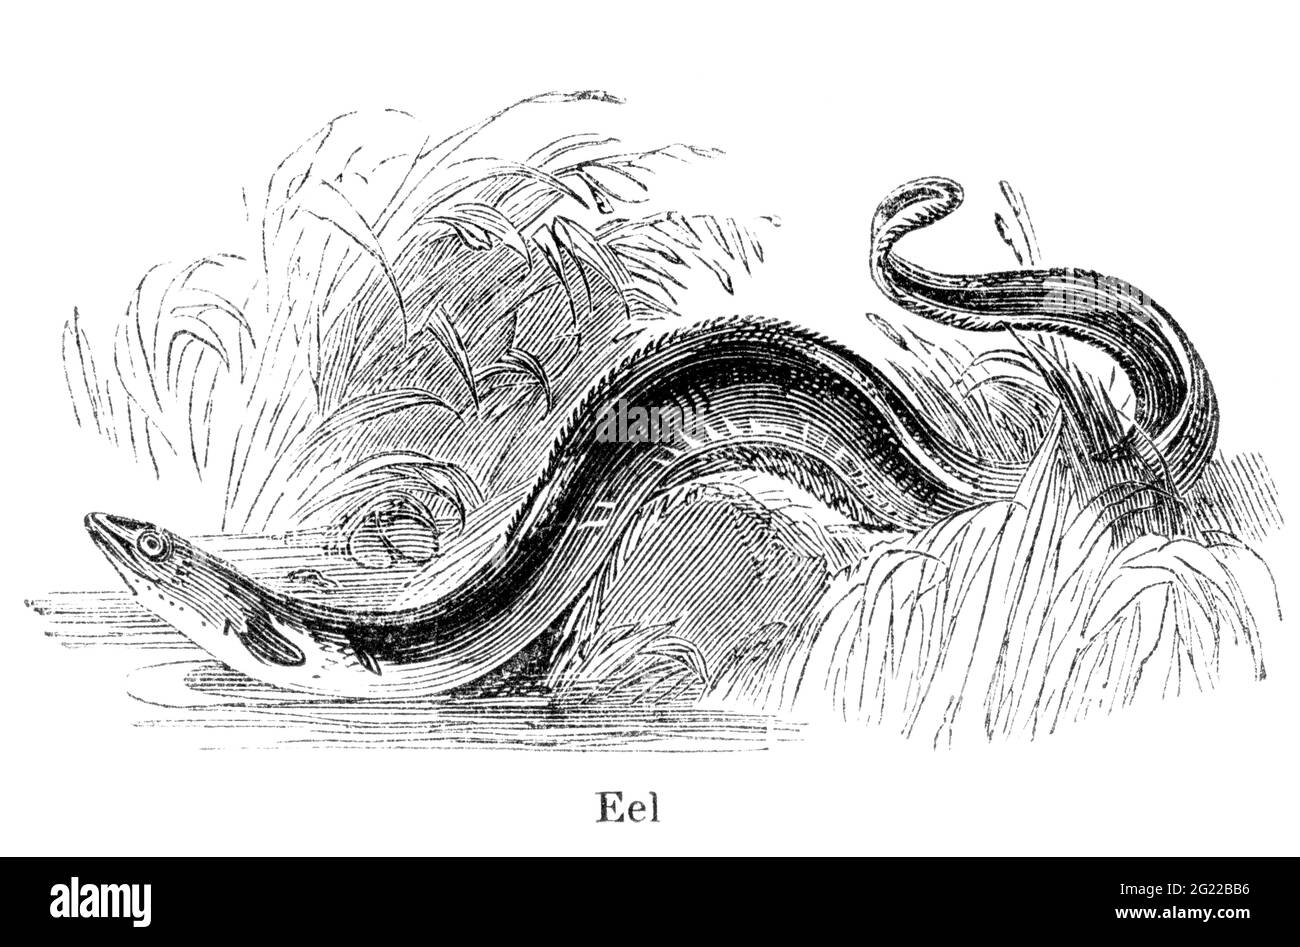 Eine gravierte Vintage-Fisch-Illustration eines Aals, aus einem viktorianischen Buch mit dem Titel Angling von Robert Blakey aus dem Jahr 1857, das nicht mehr urheberrechtlich geschützt ist Stockfoto